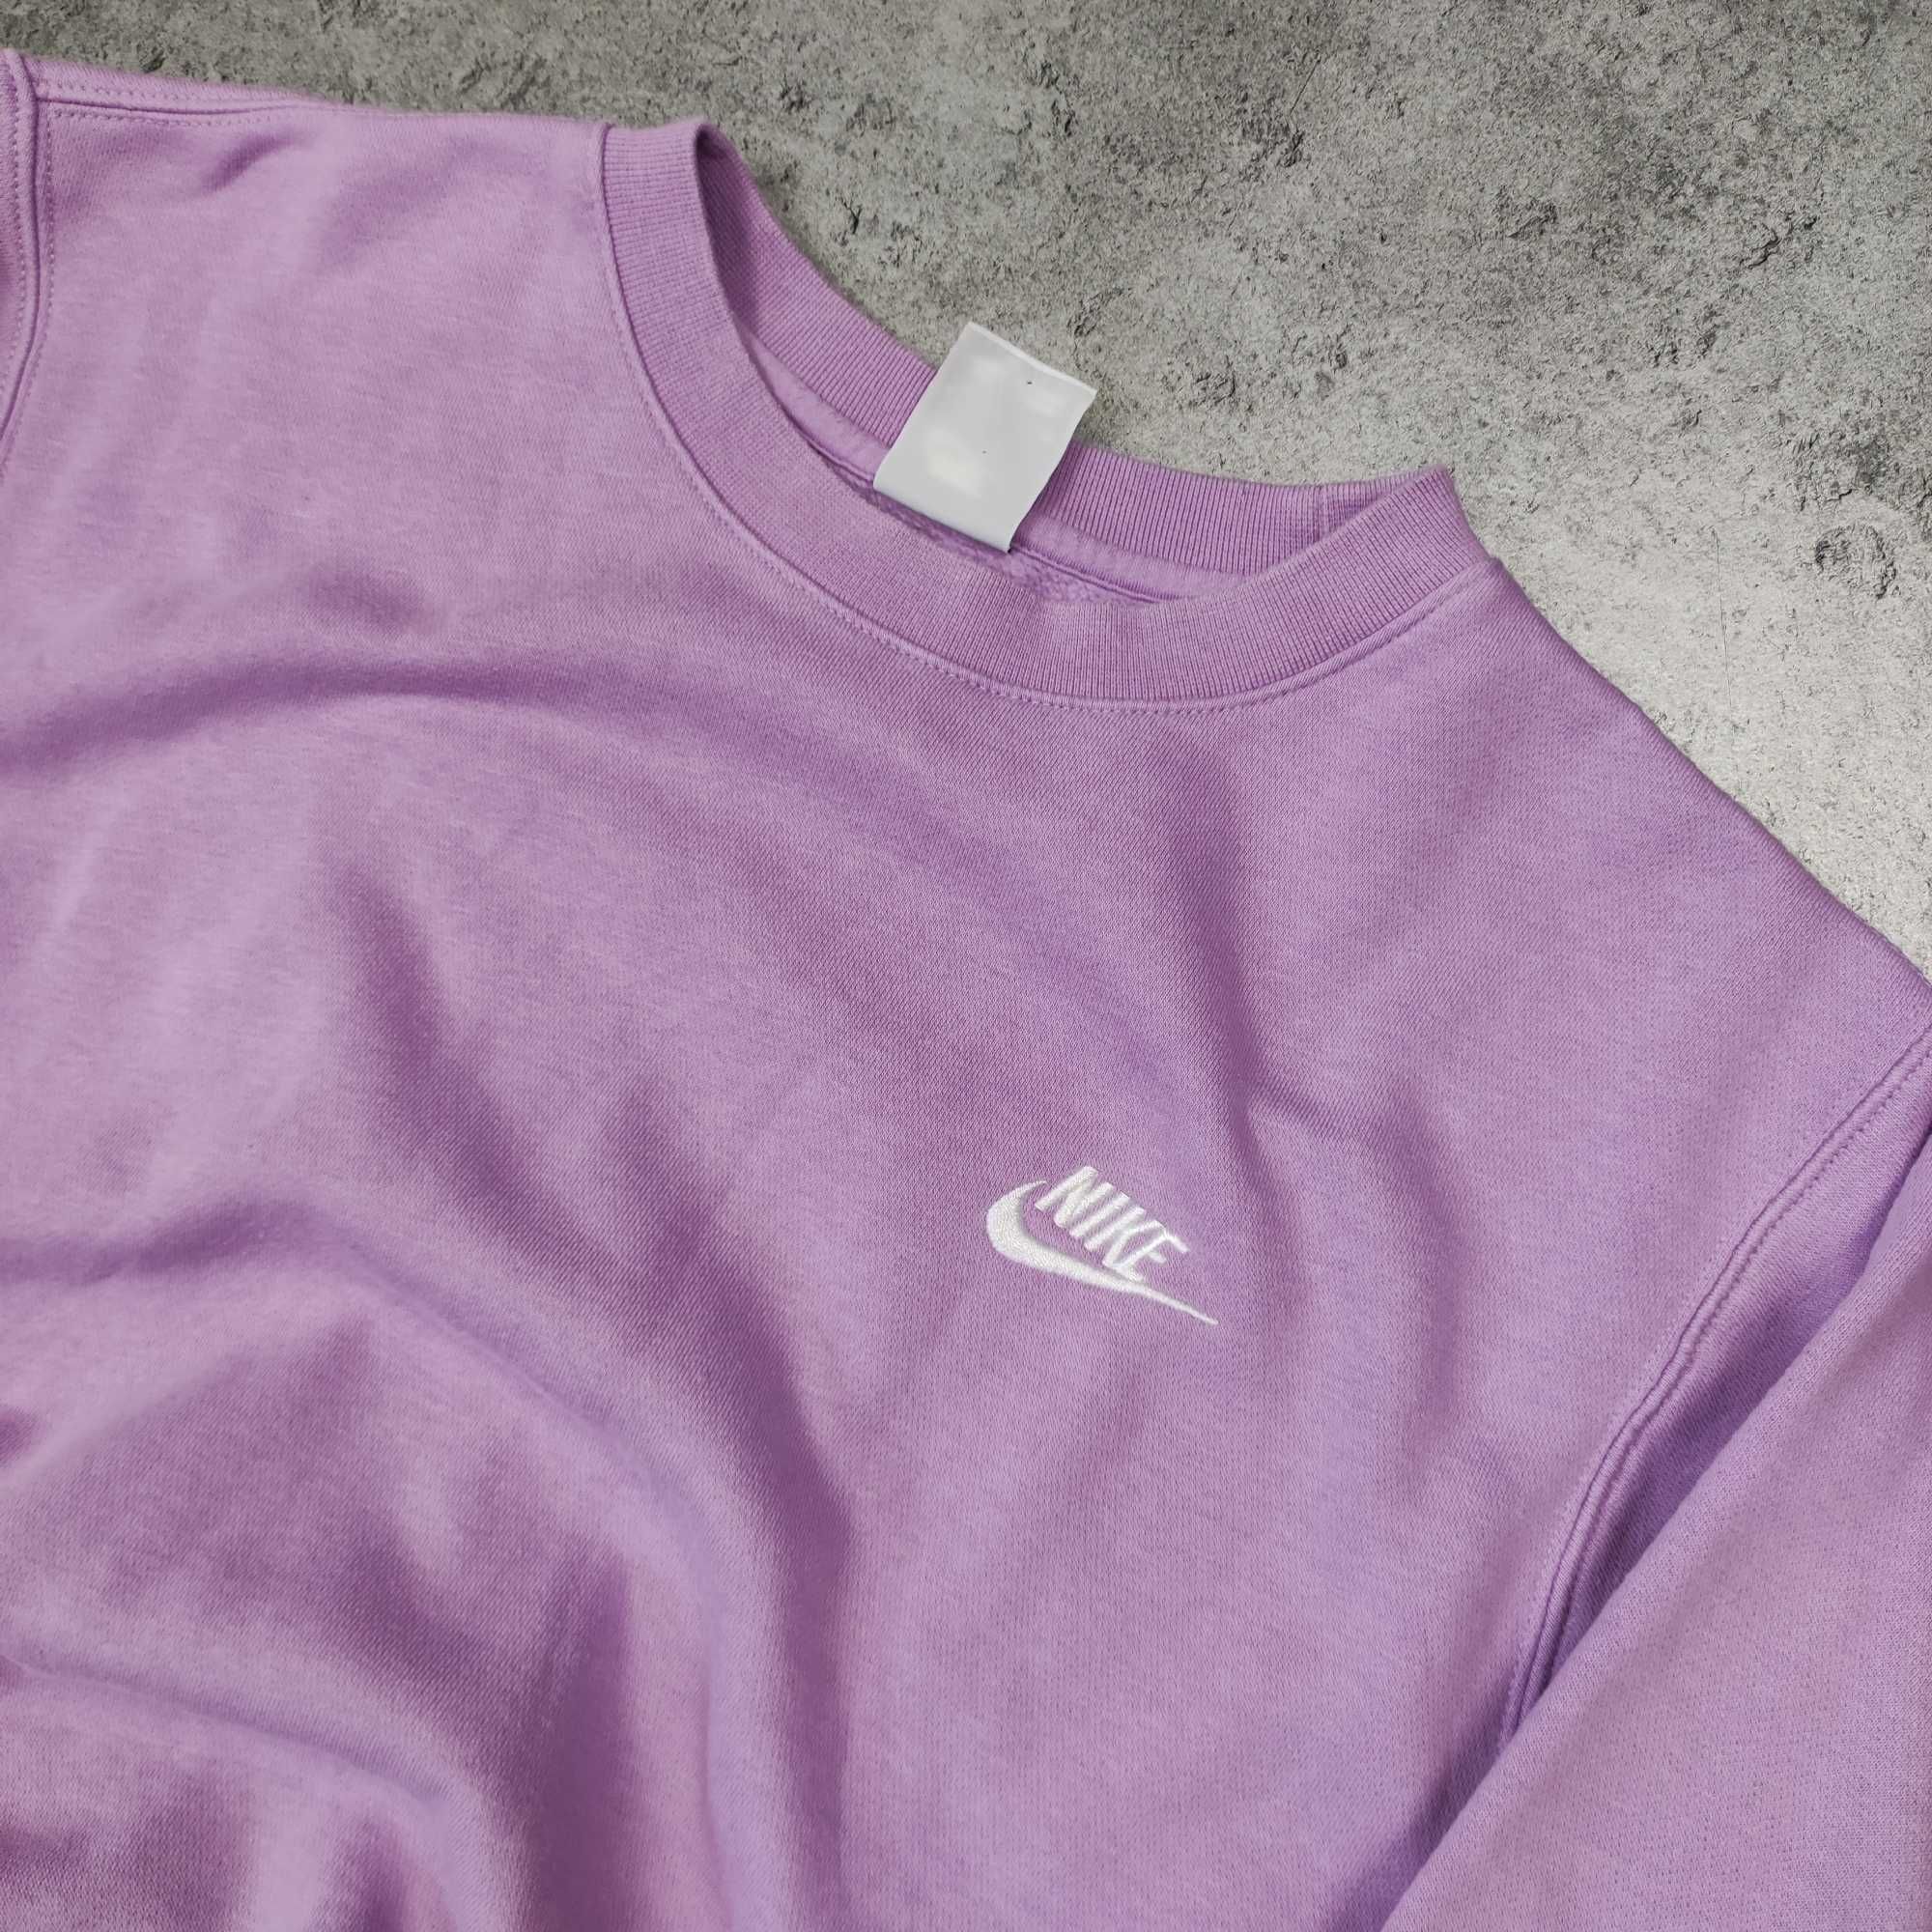 MĘSKA Bluza Sportowa Bawełna Liliowa Nike Klasyczna Małe Logo Haft